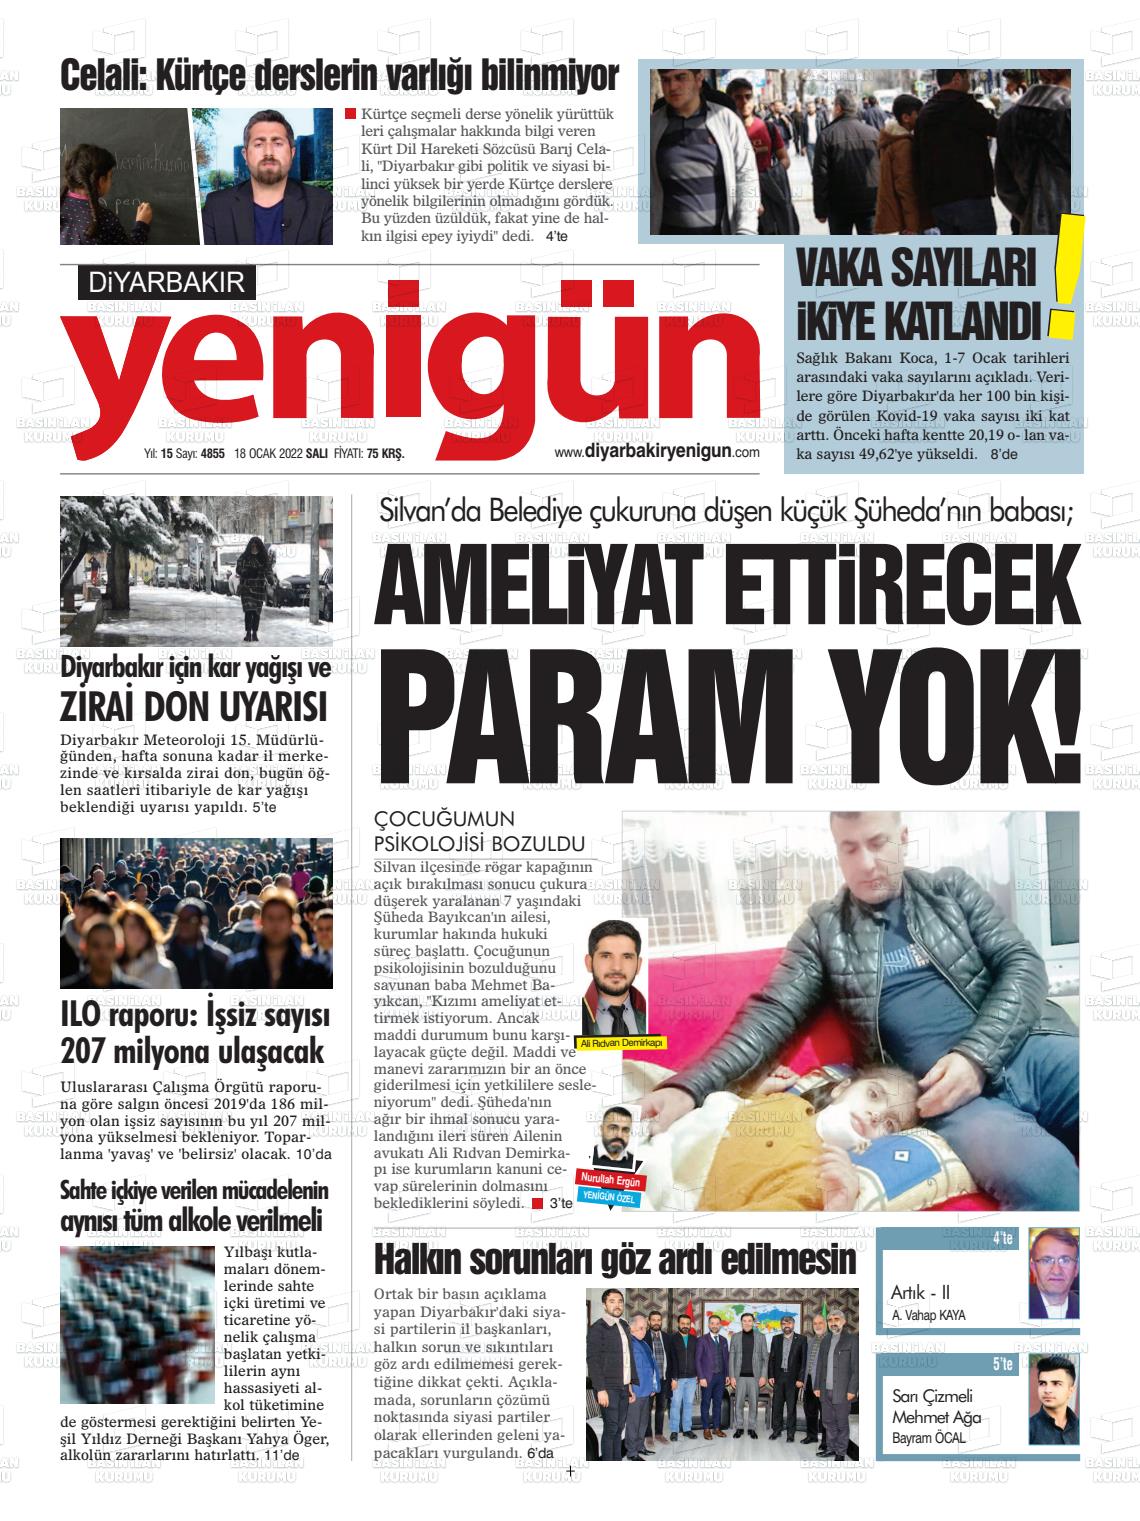 18 Ocak 2022 Diyarbakır Yenigün Gazete Manşeti